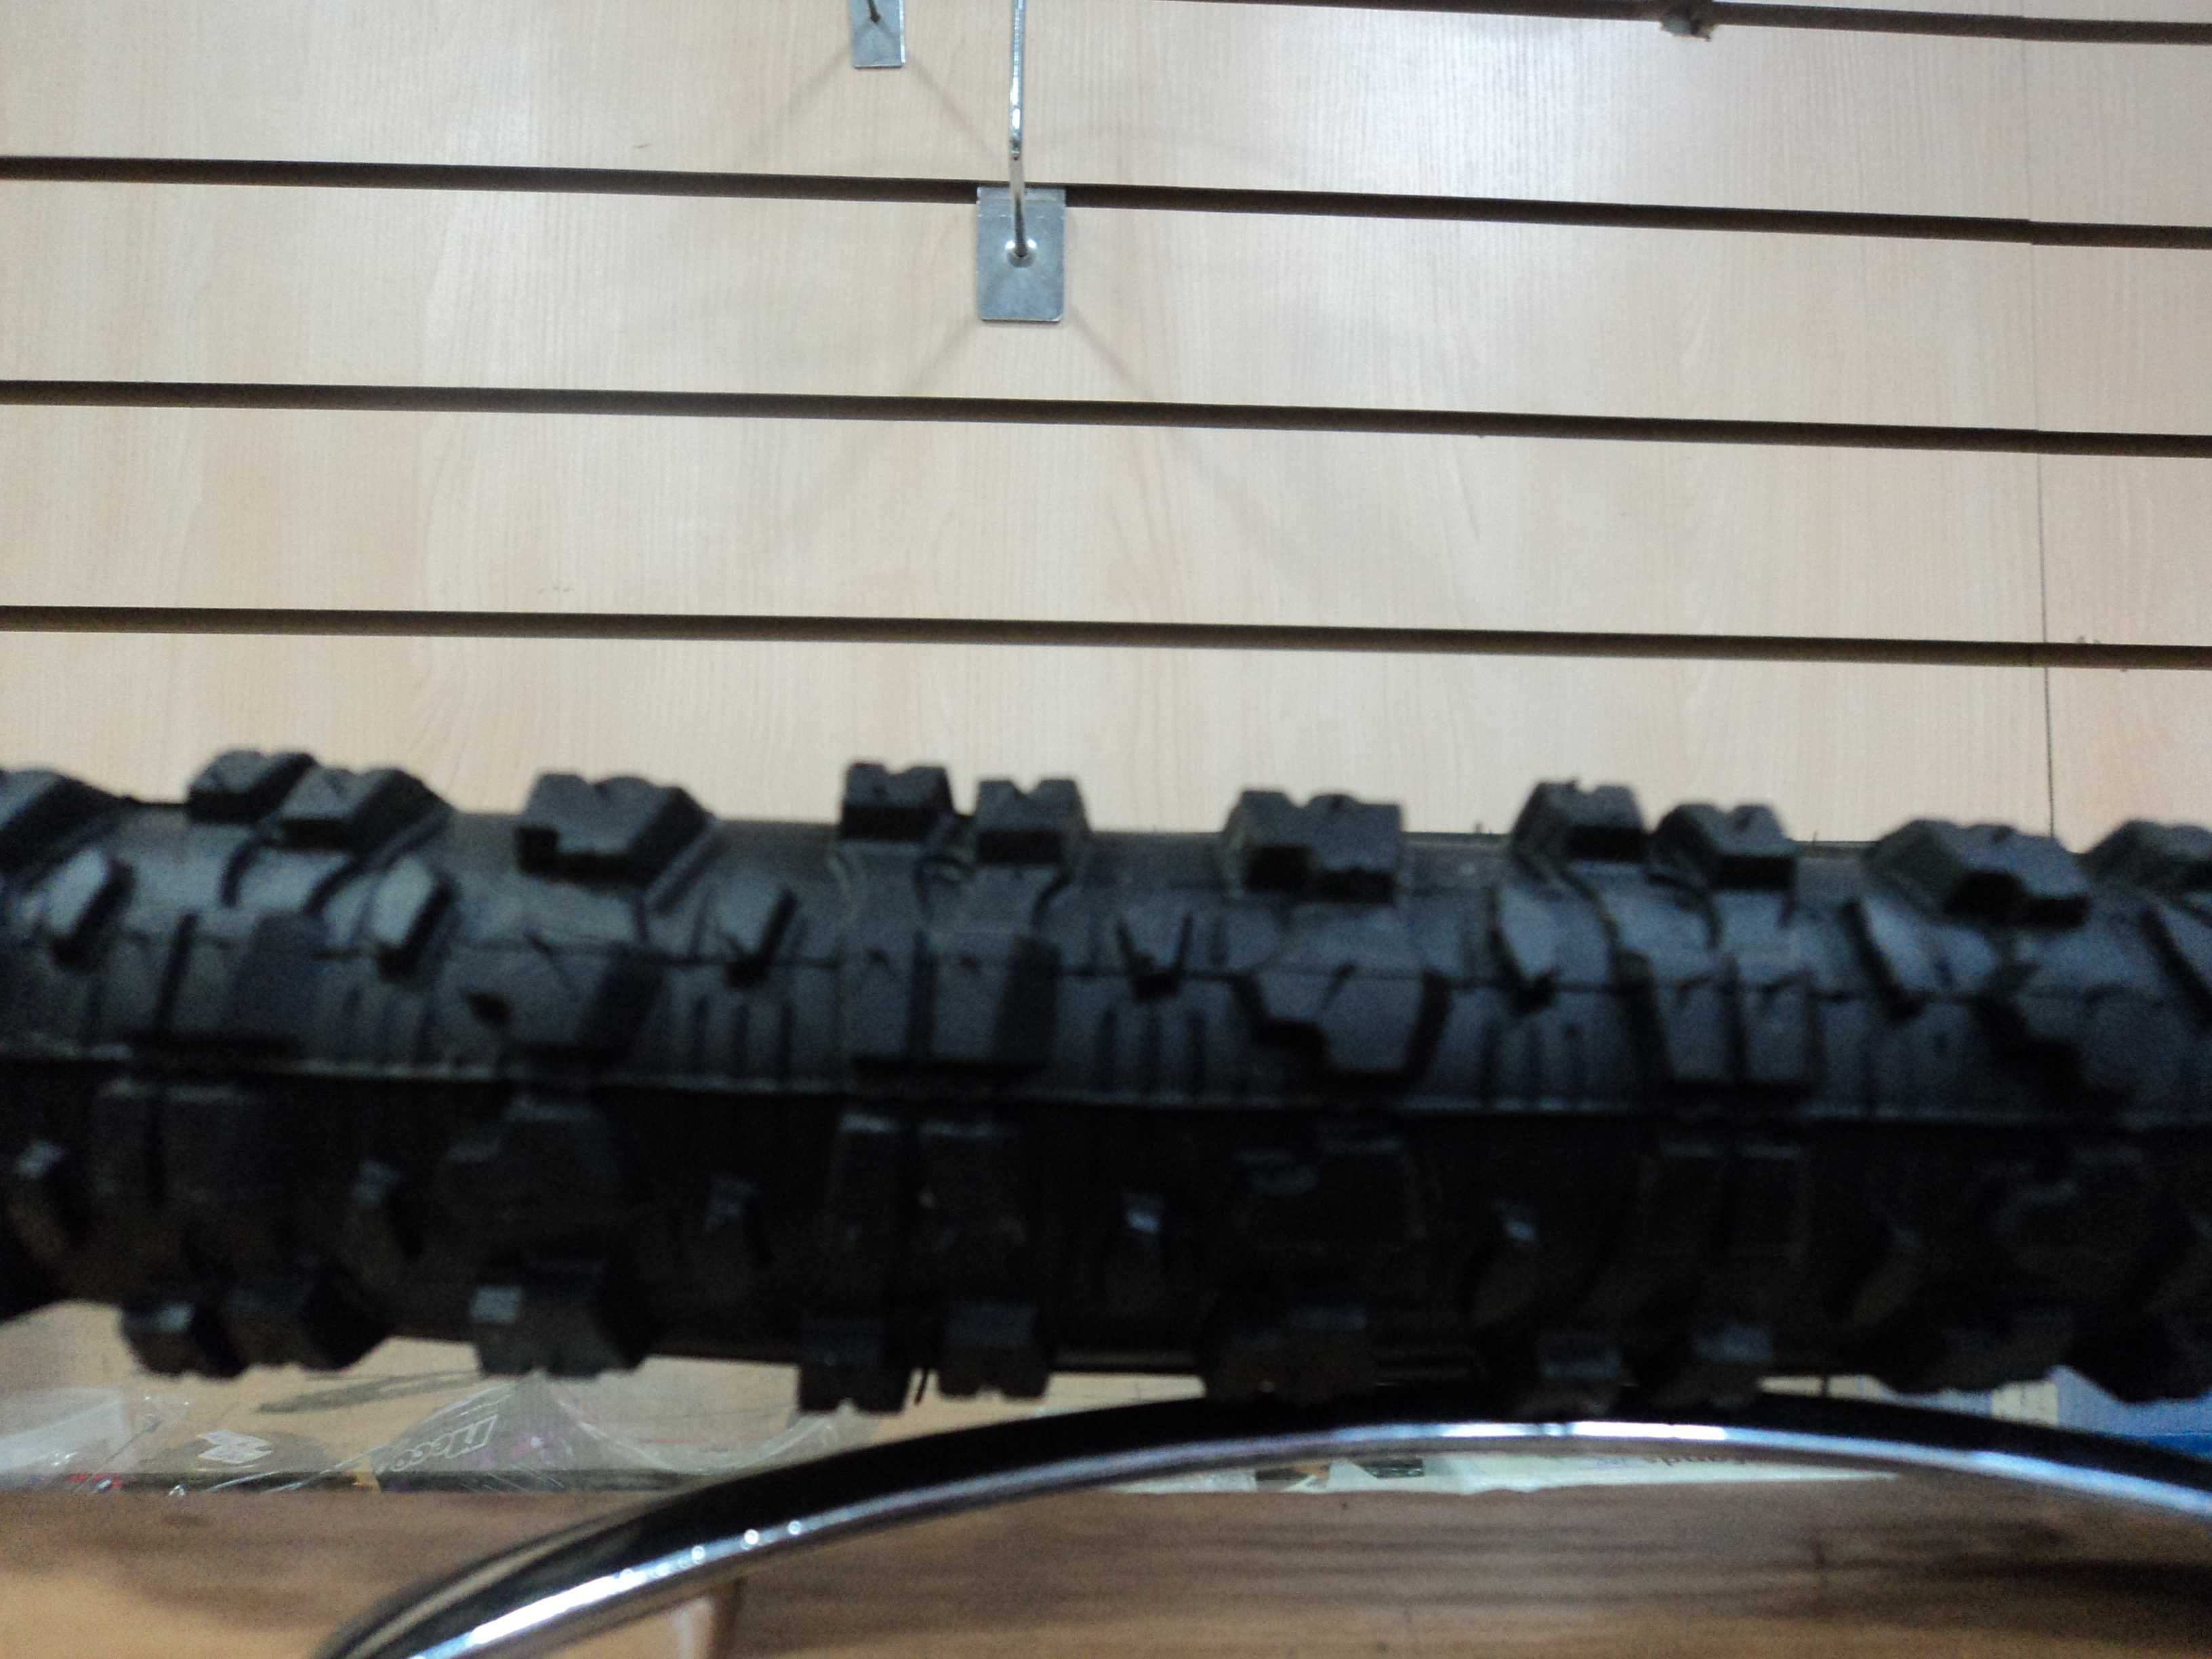 Покрышки для велосипедных колёс диаметром 26” фирмы KENDA м-ль KOYOTE